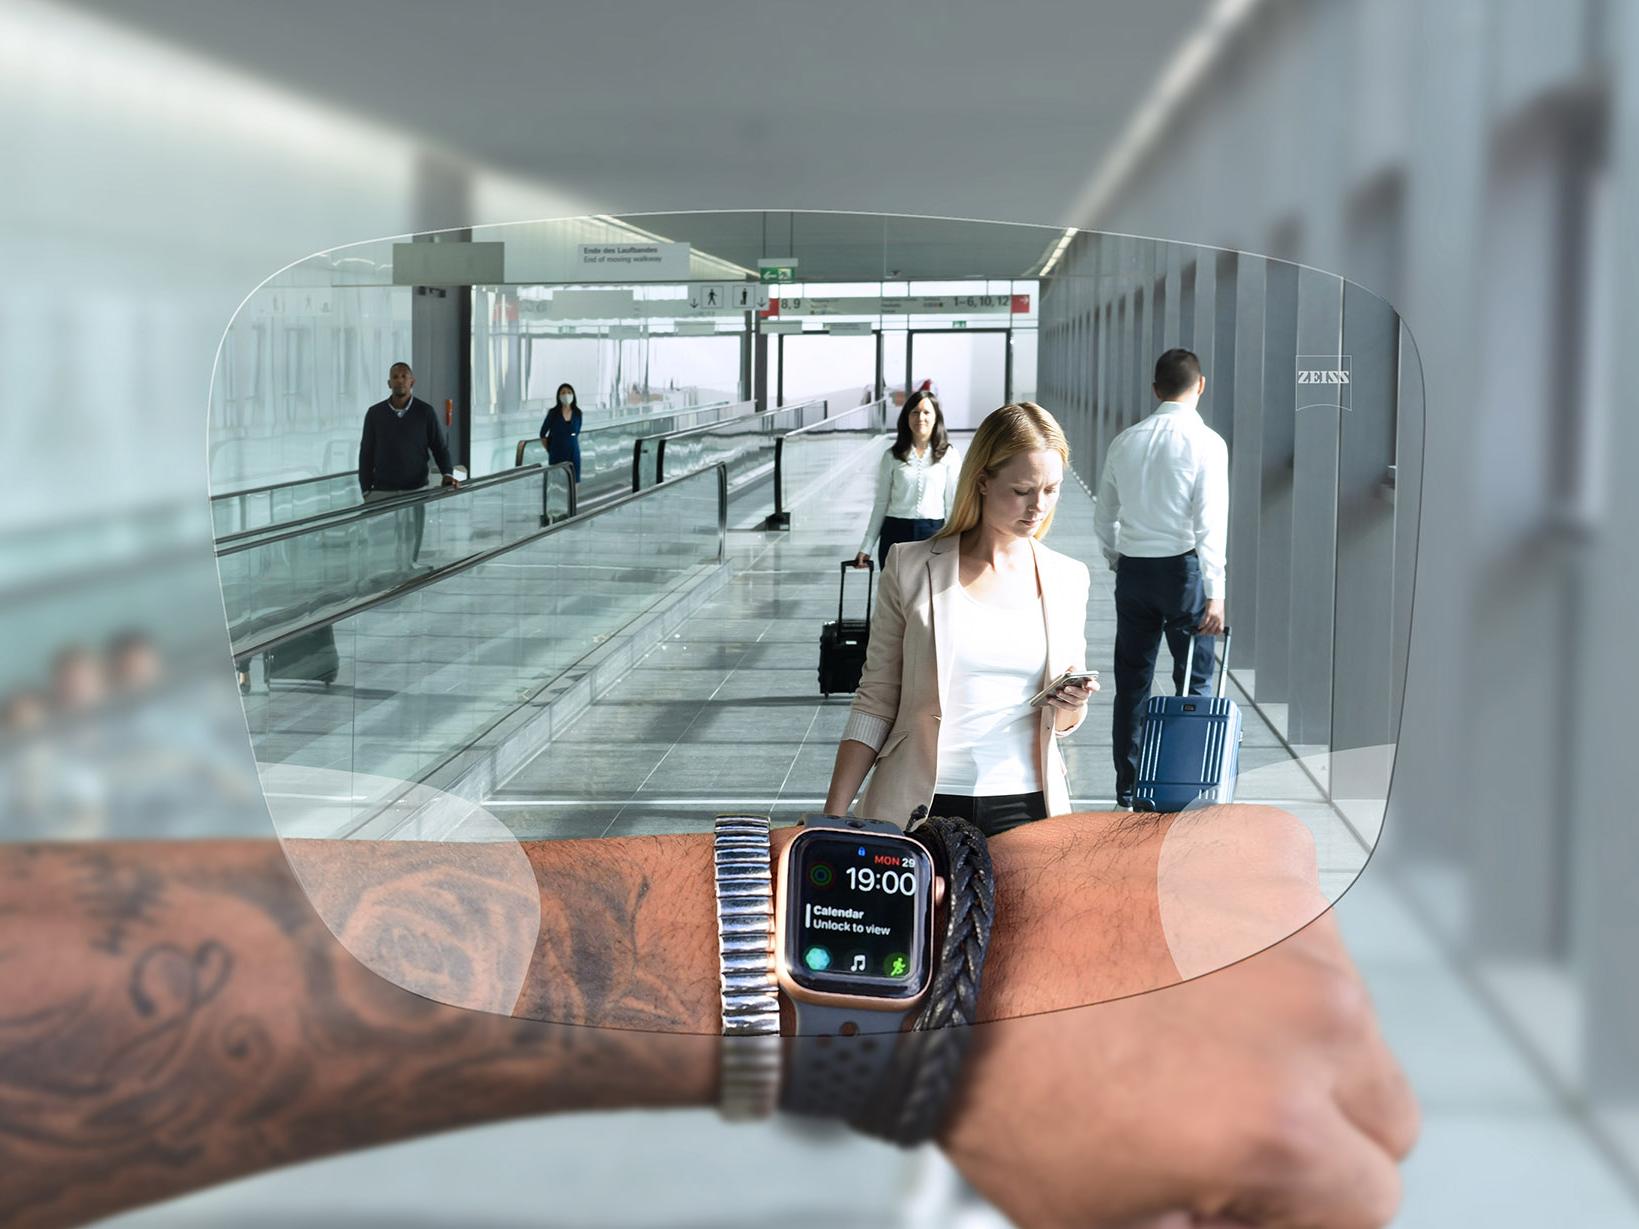 Henkilö katsoo kelloaan ZEISS SmartLife Digital -linssien läpi. Taustalla näkyy tyypillinen lentokenttätilanne, jossa ihmiset kävelevät liukuportaissa ja työntävät matkalaukkujaan. 